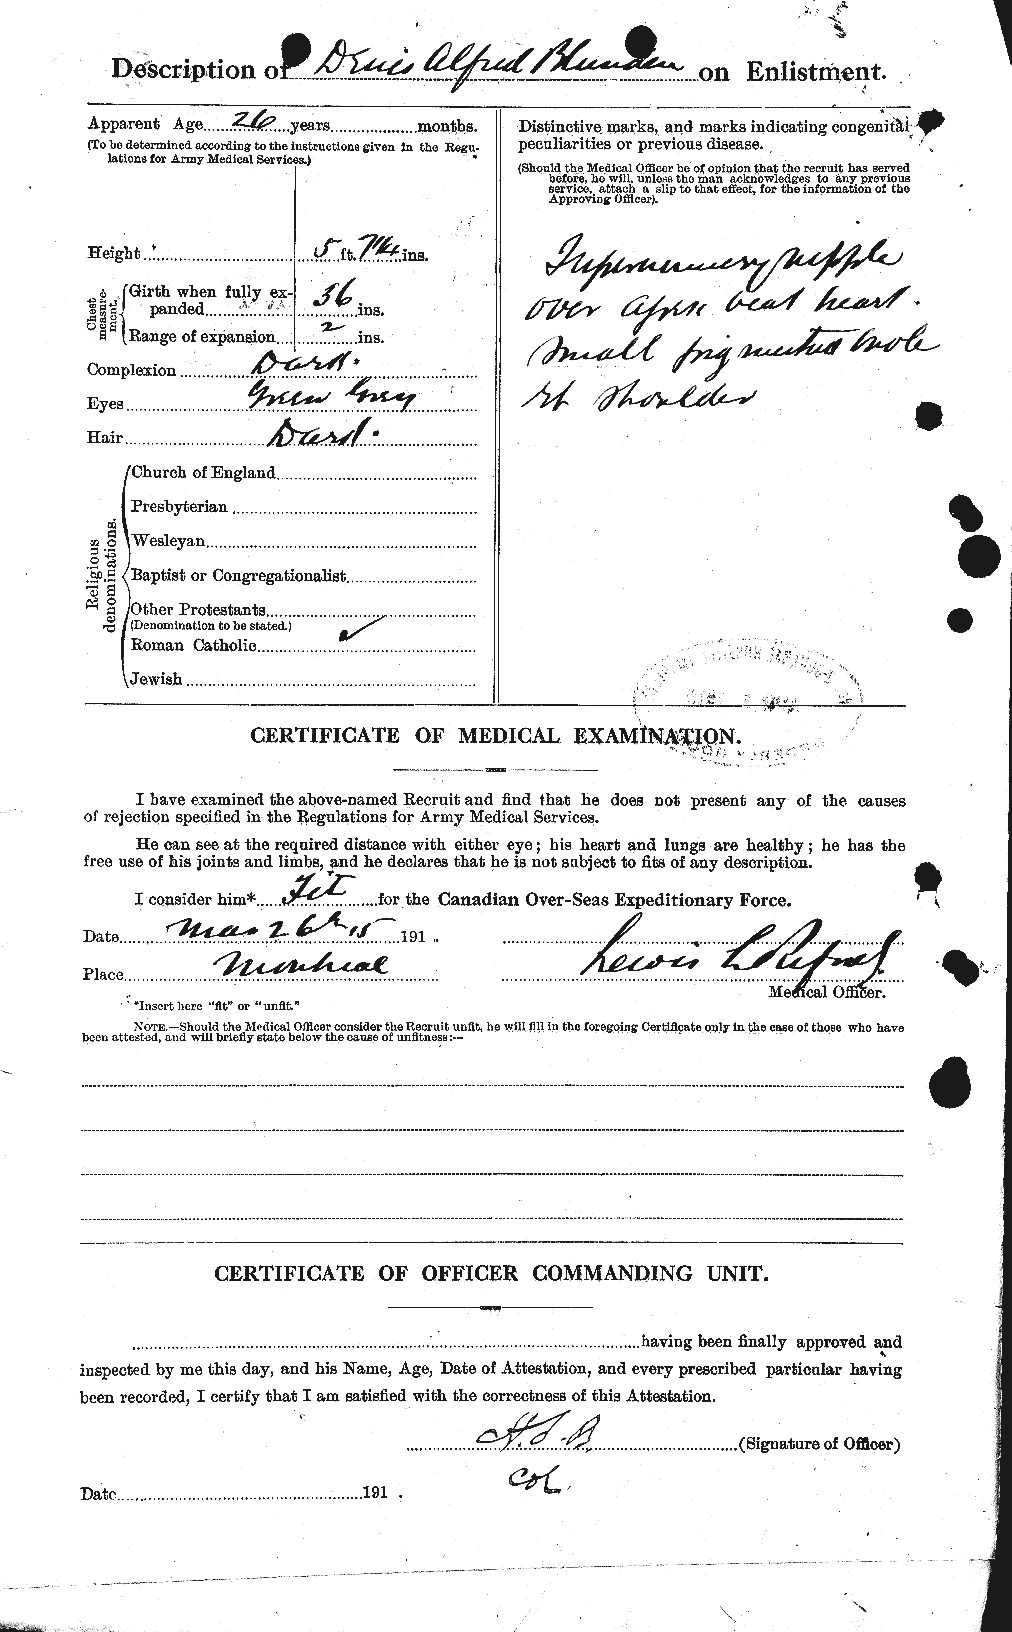 Dossiers du Personnel de la Première Guerre mondiale - CEC 247215b